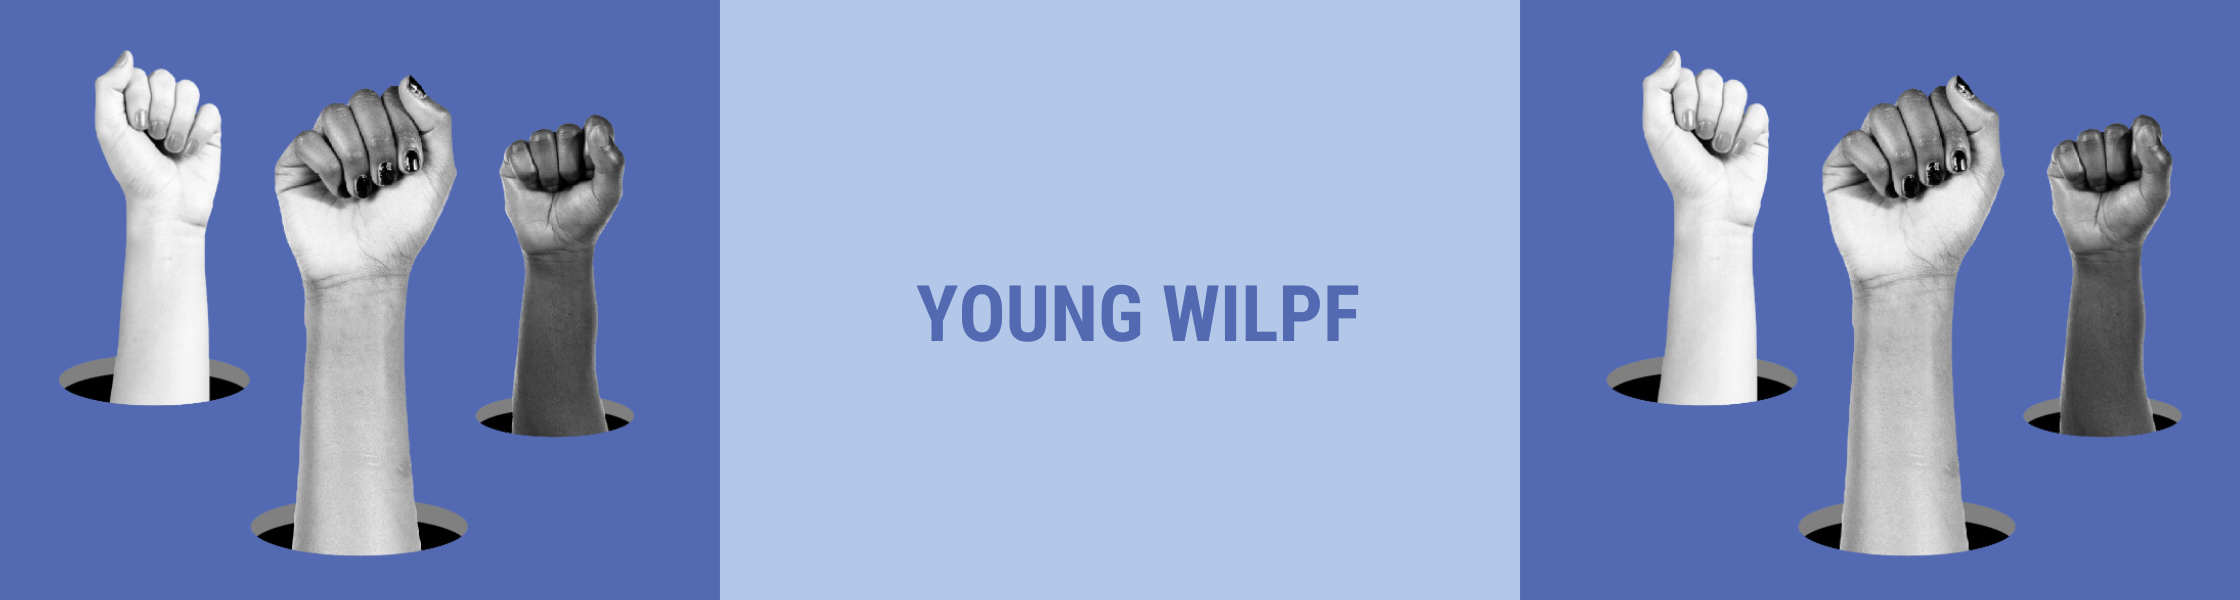 Auf dem BIld sind erhobene Fäuste und der Schriftzug Young WILPF zu sehen.